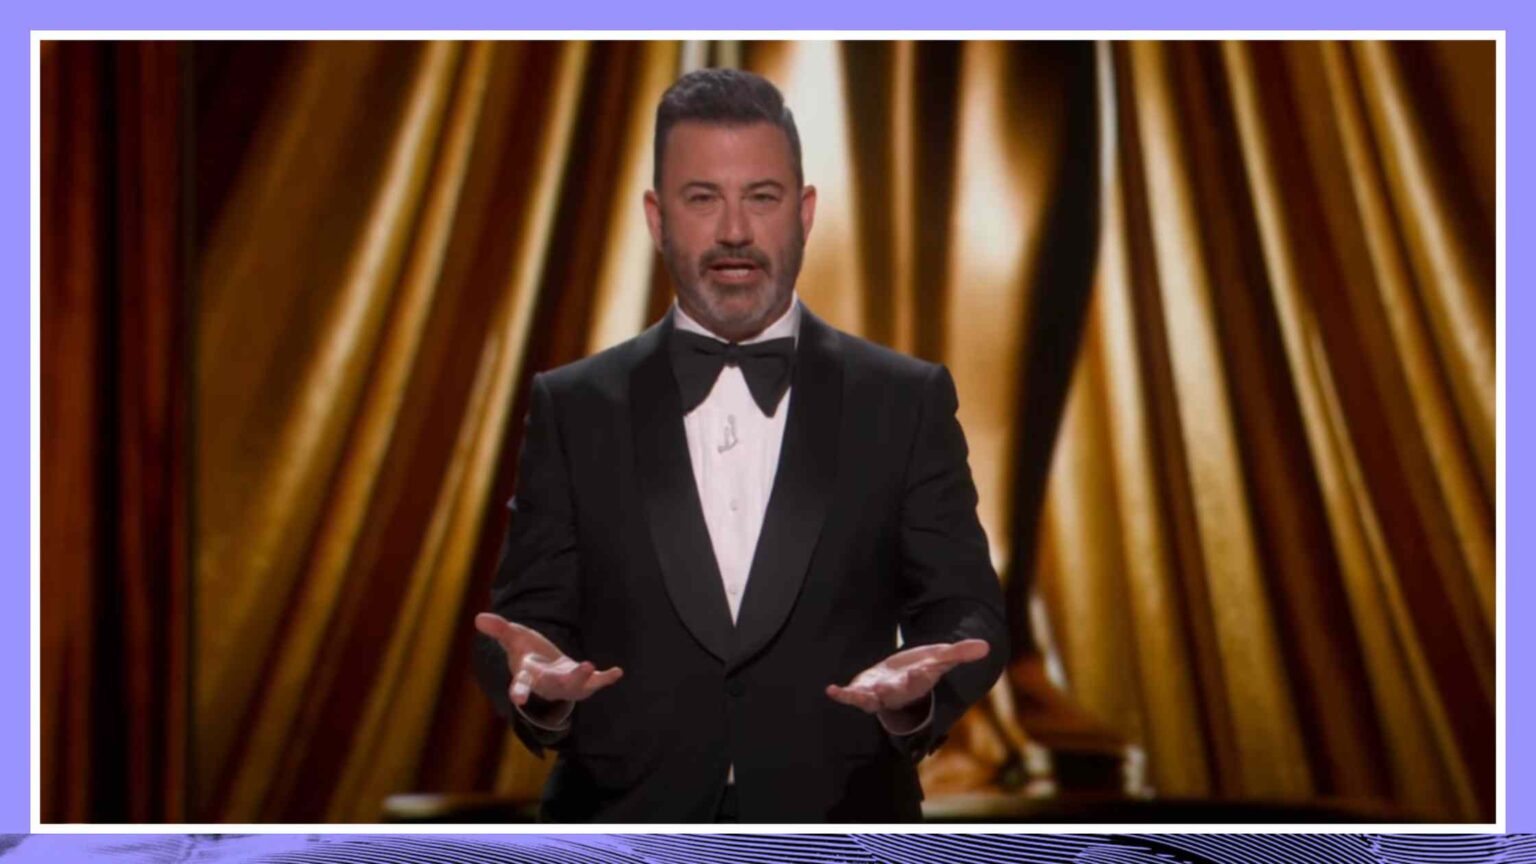 Oscars Academy Awards Jimmy Kimmel Monologue Rev